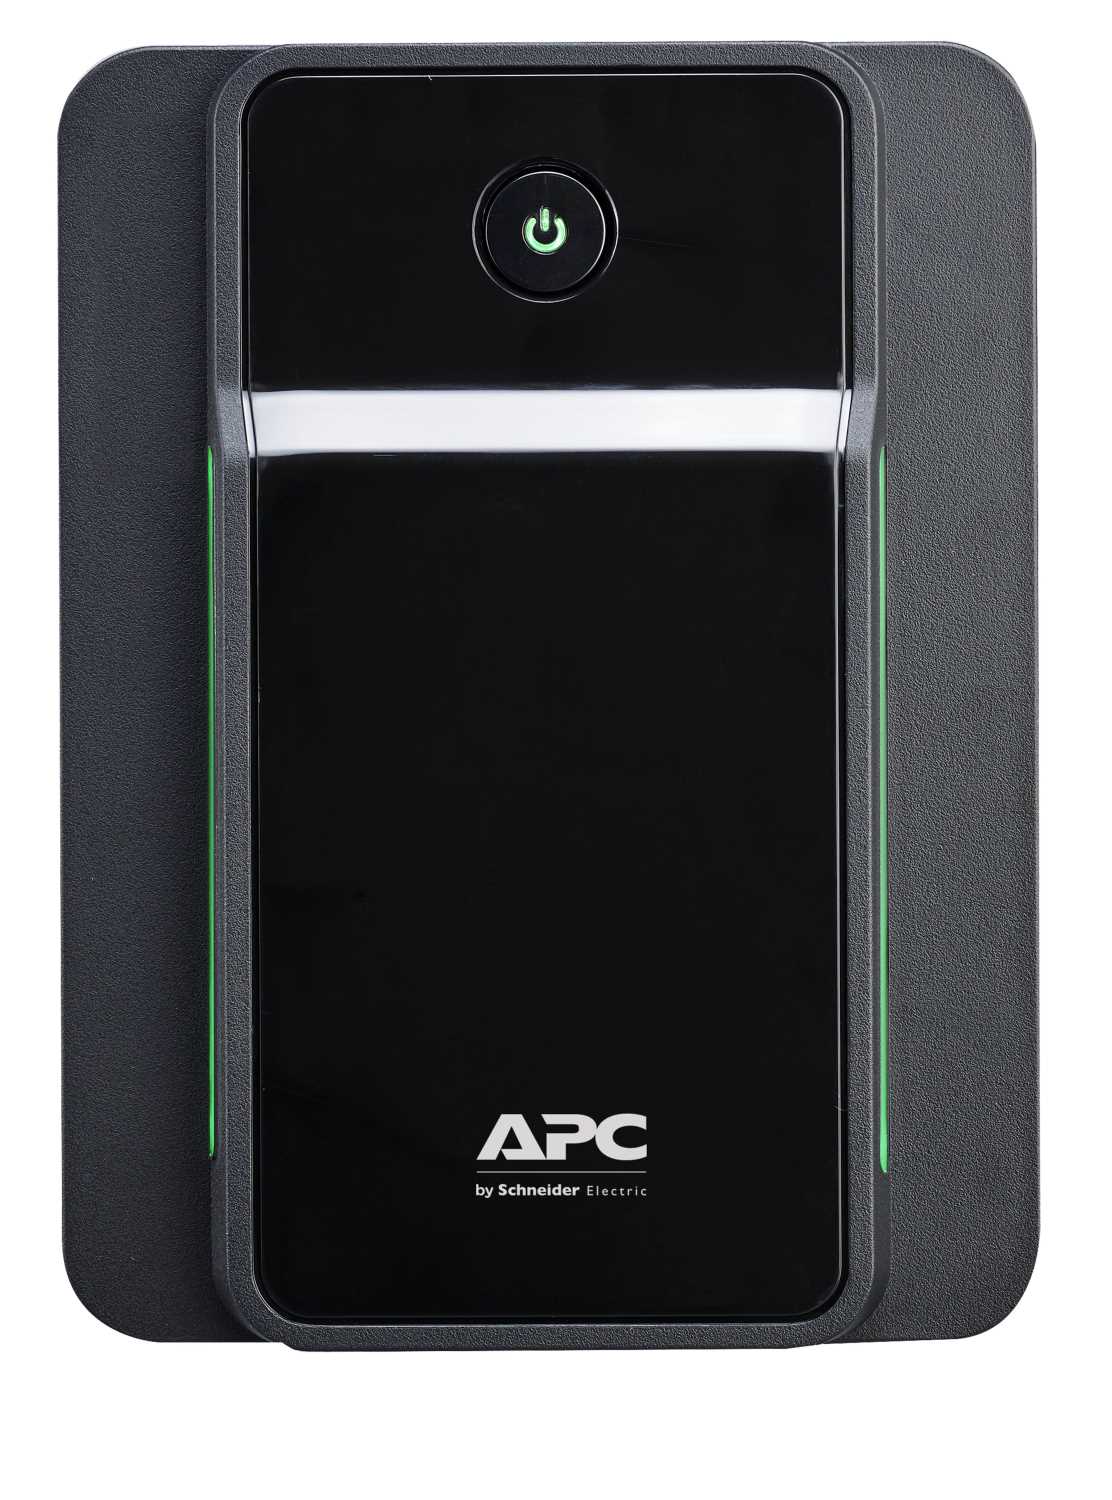 Источник бесперебойного питания APC APC Back-UPS 950VA, 230V, AVR, IEC Sockets